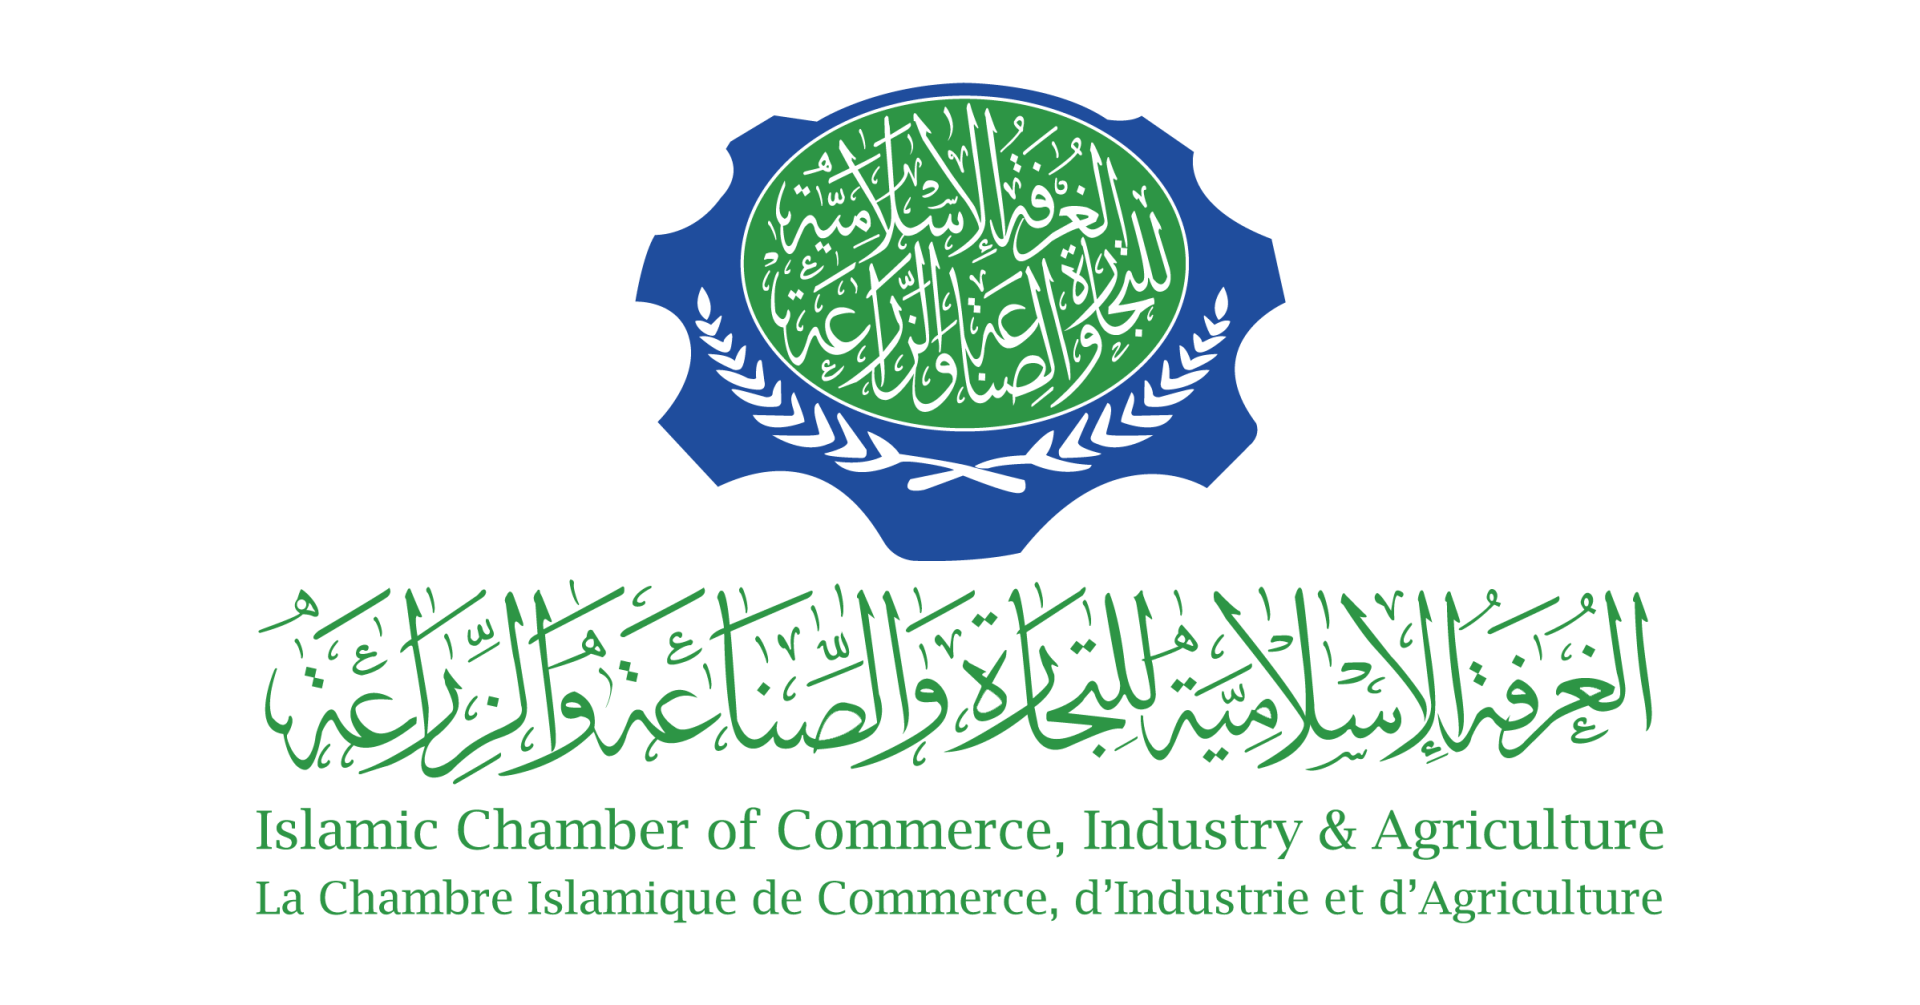 Исламская торгово-промышленная и аграрная палата организует в Баку агрофорум (Эксклюзив)